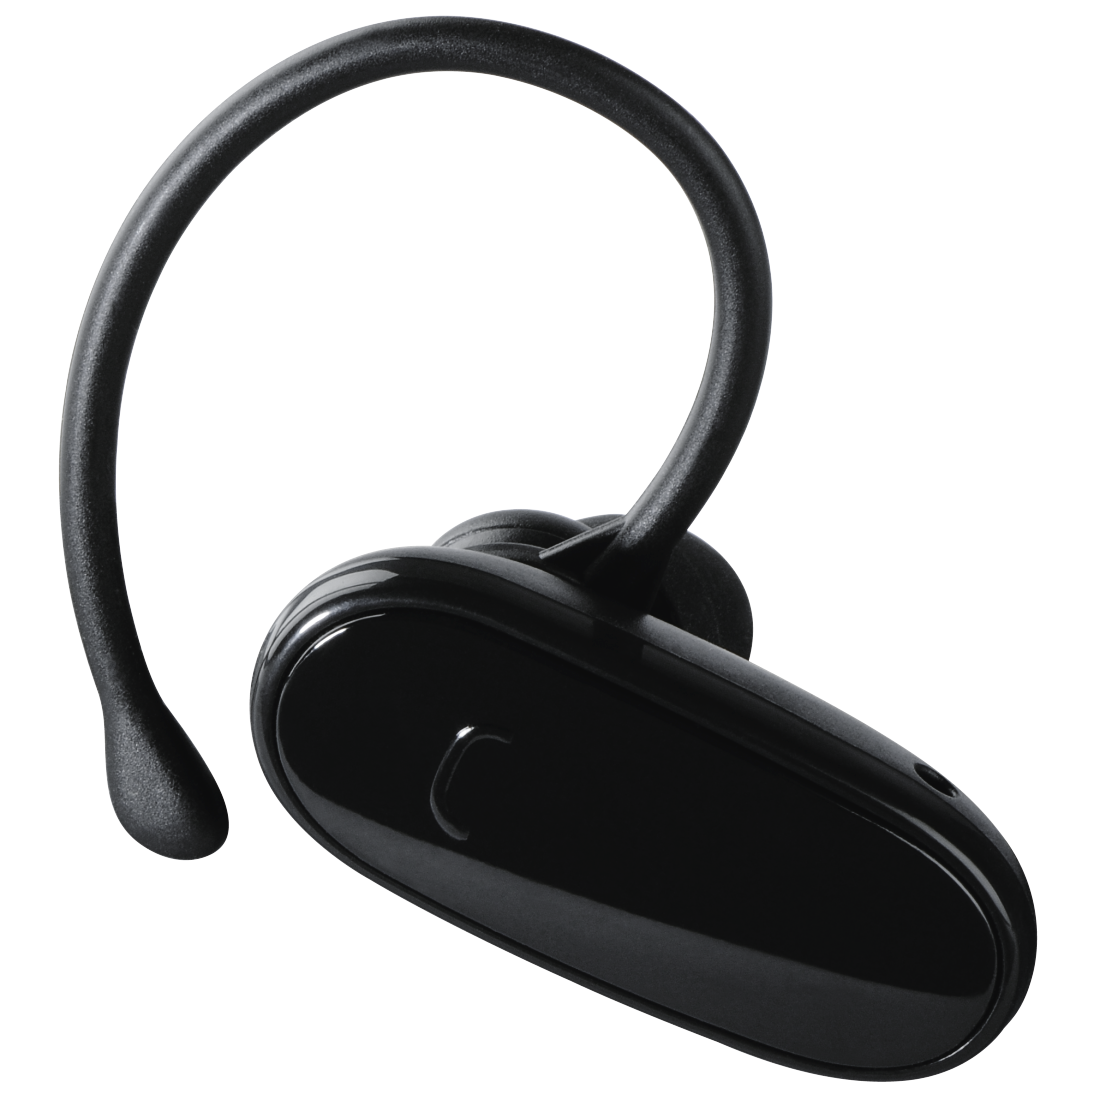 00115401 Hama Bluetooth®-Headset "ES1" für PS3 | hama.com